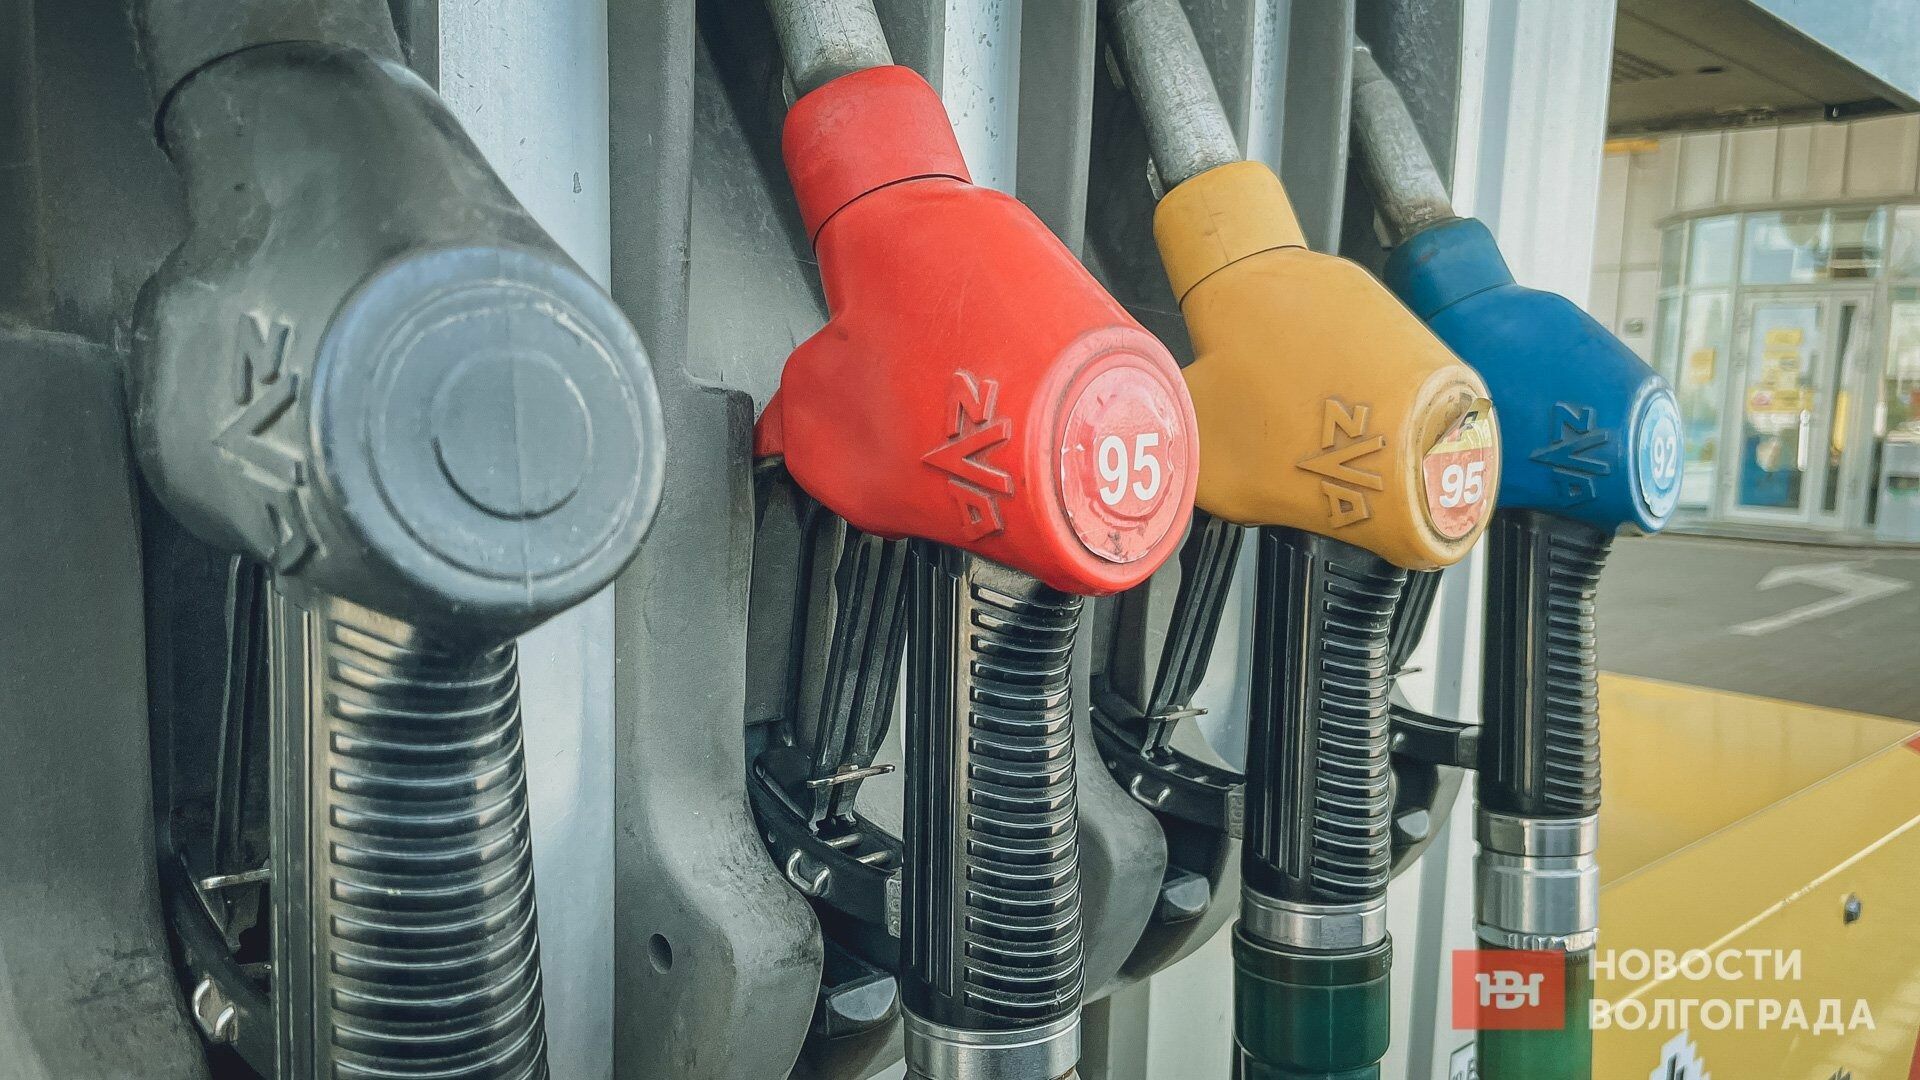 Сколько стоит бензин на АЗС в Волгограде